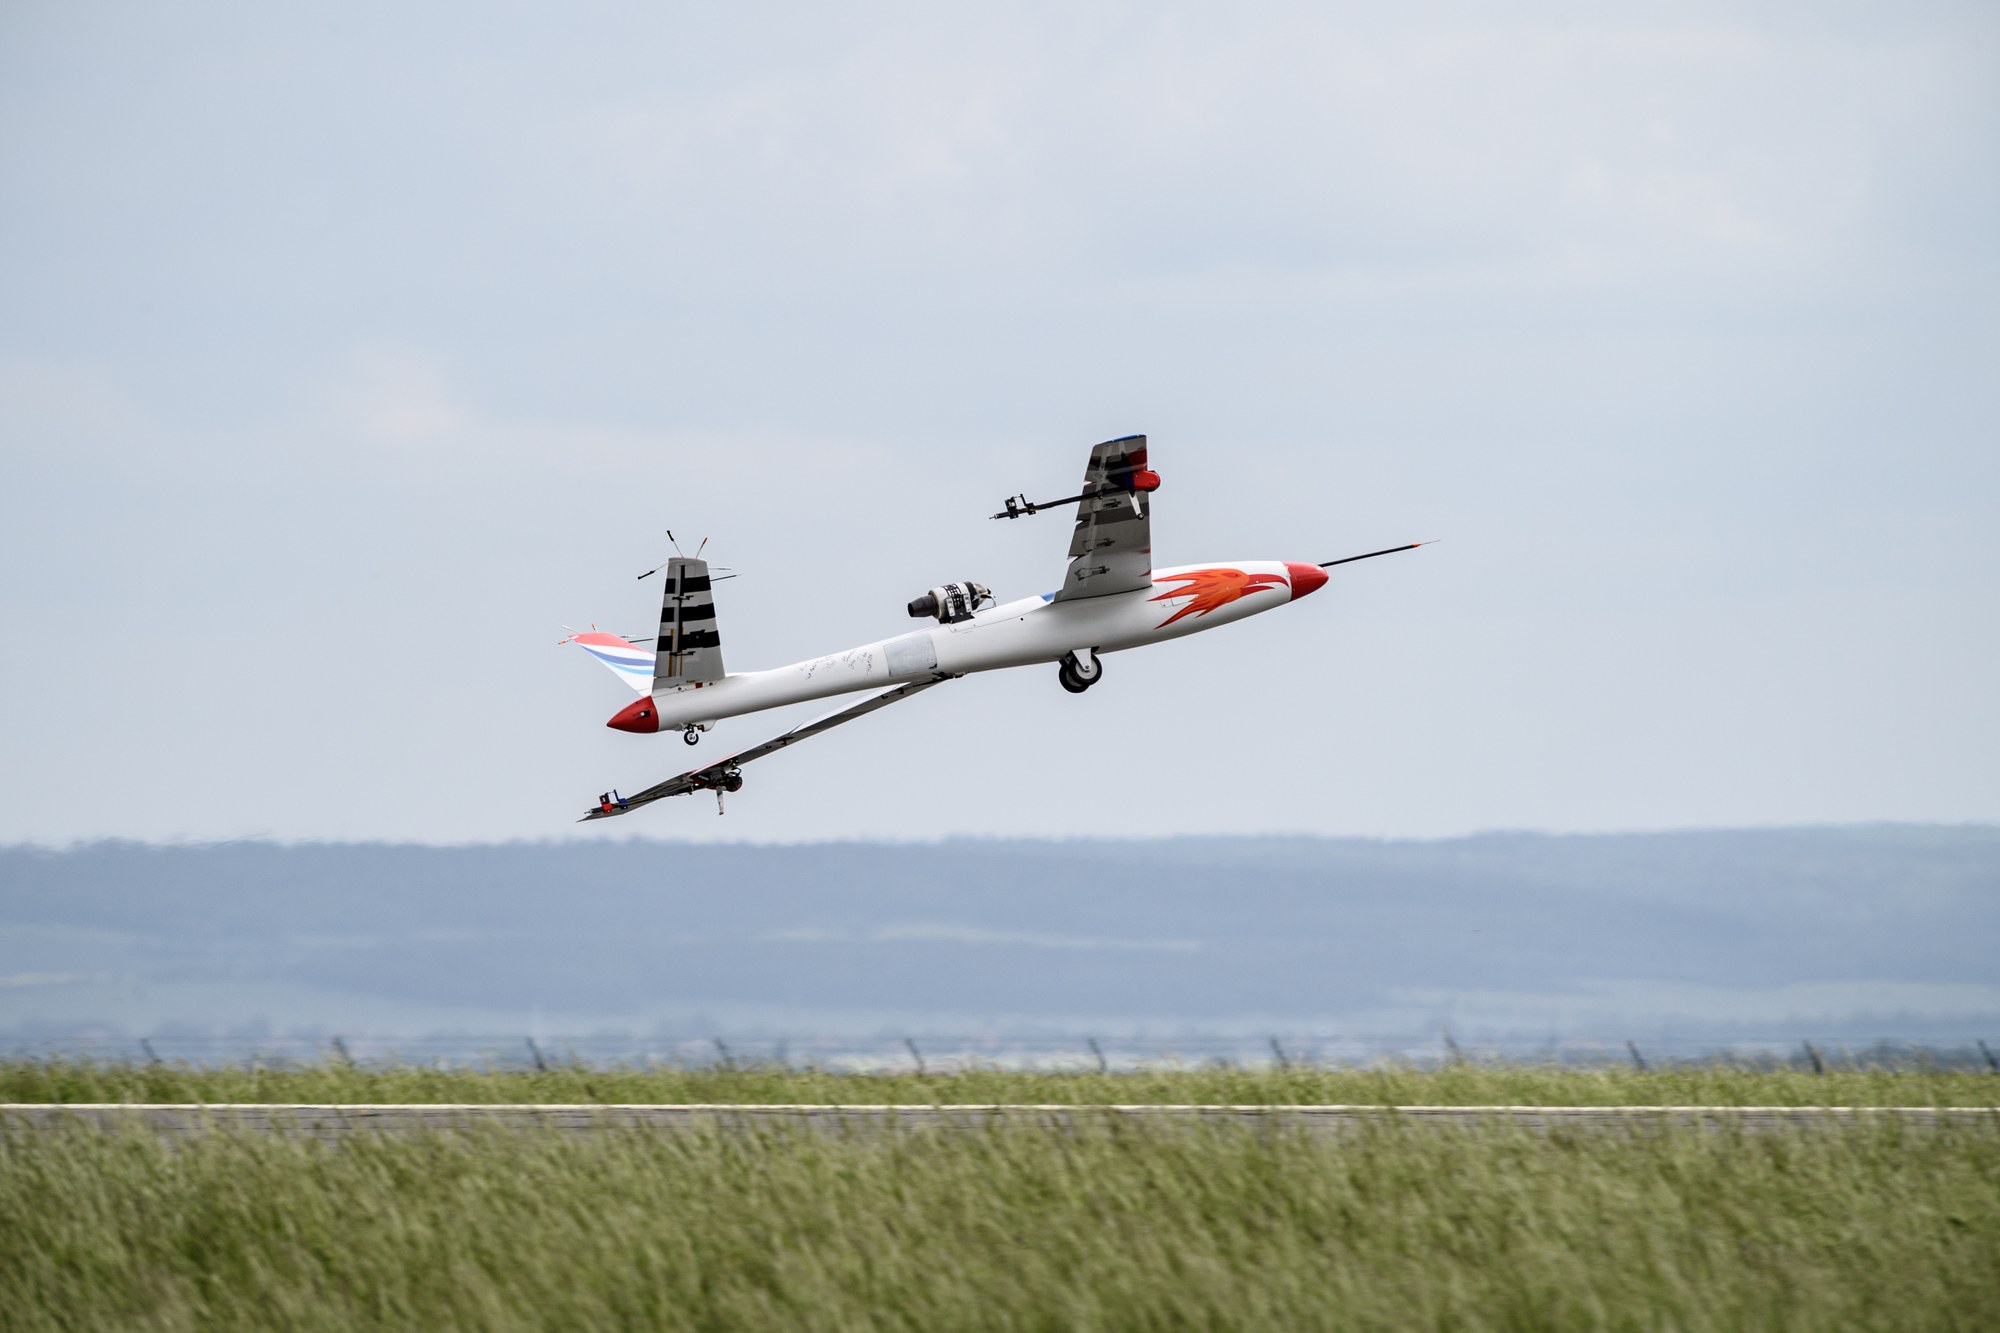 UAV with built-in active flutter suppression system